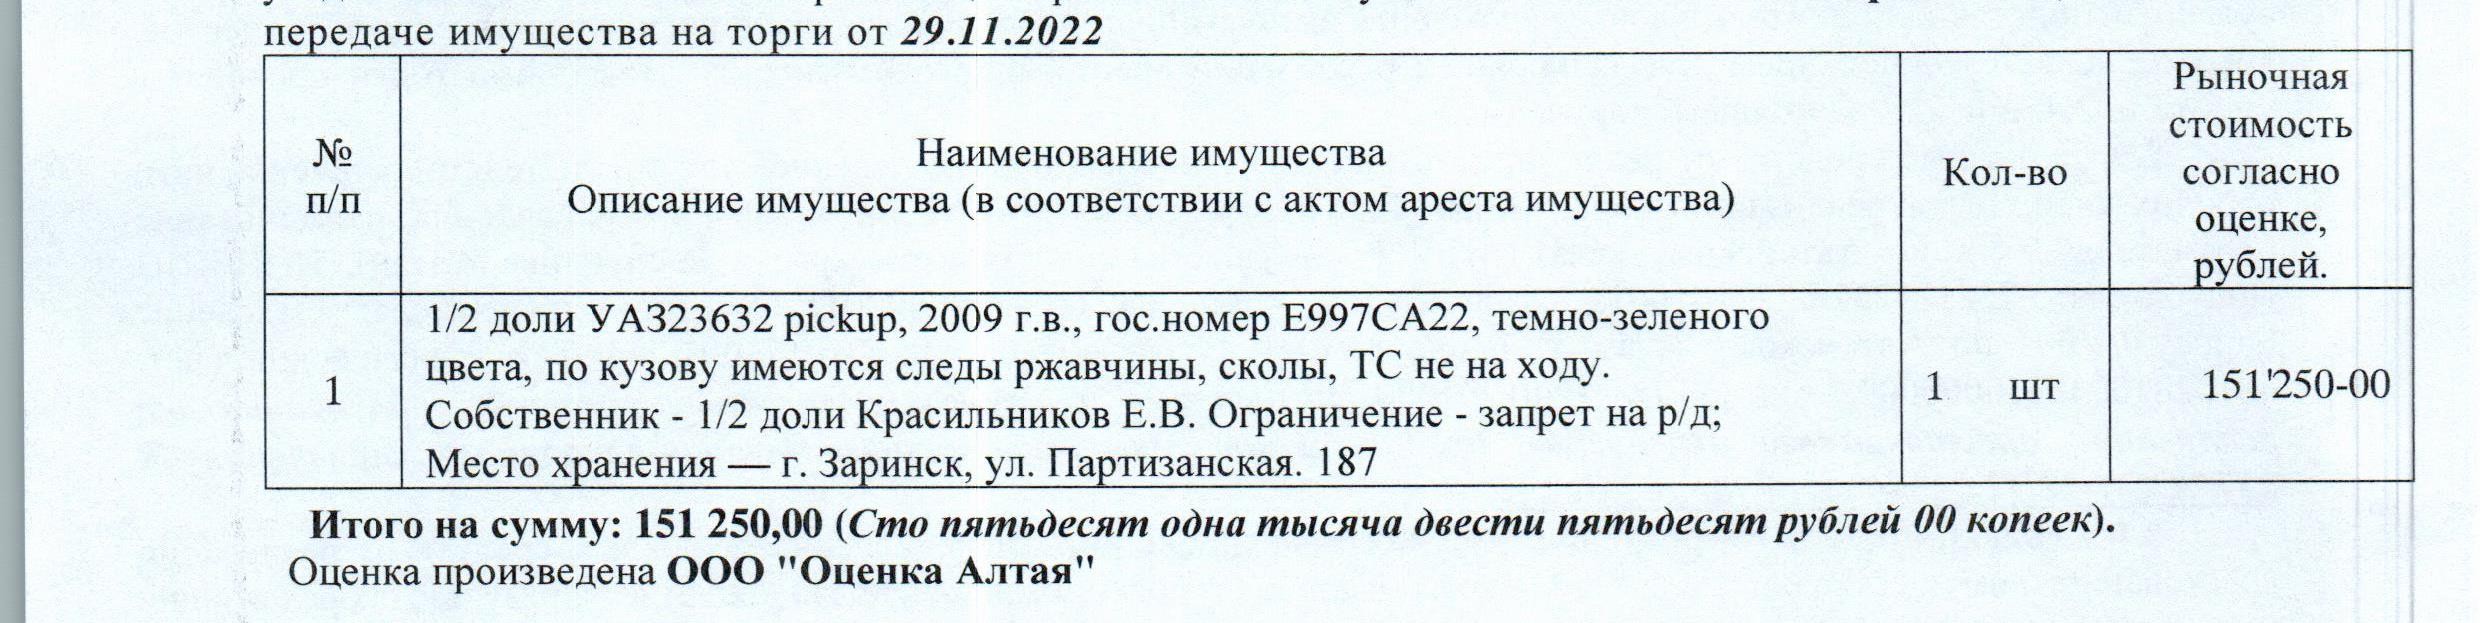 Лот№9 1/2 доля в праве собственности на автомобиль УАЗ23632 pickup, 2009 г.в., г/н Е997СА22, цвет: т